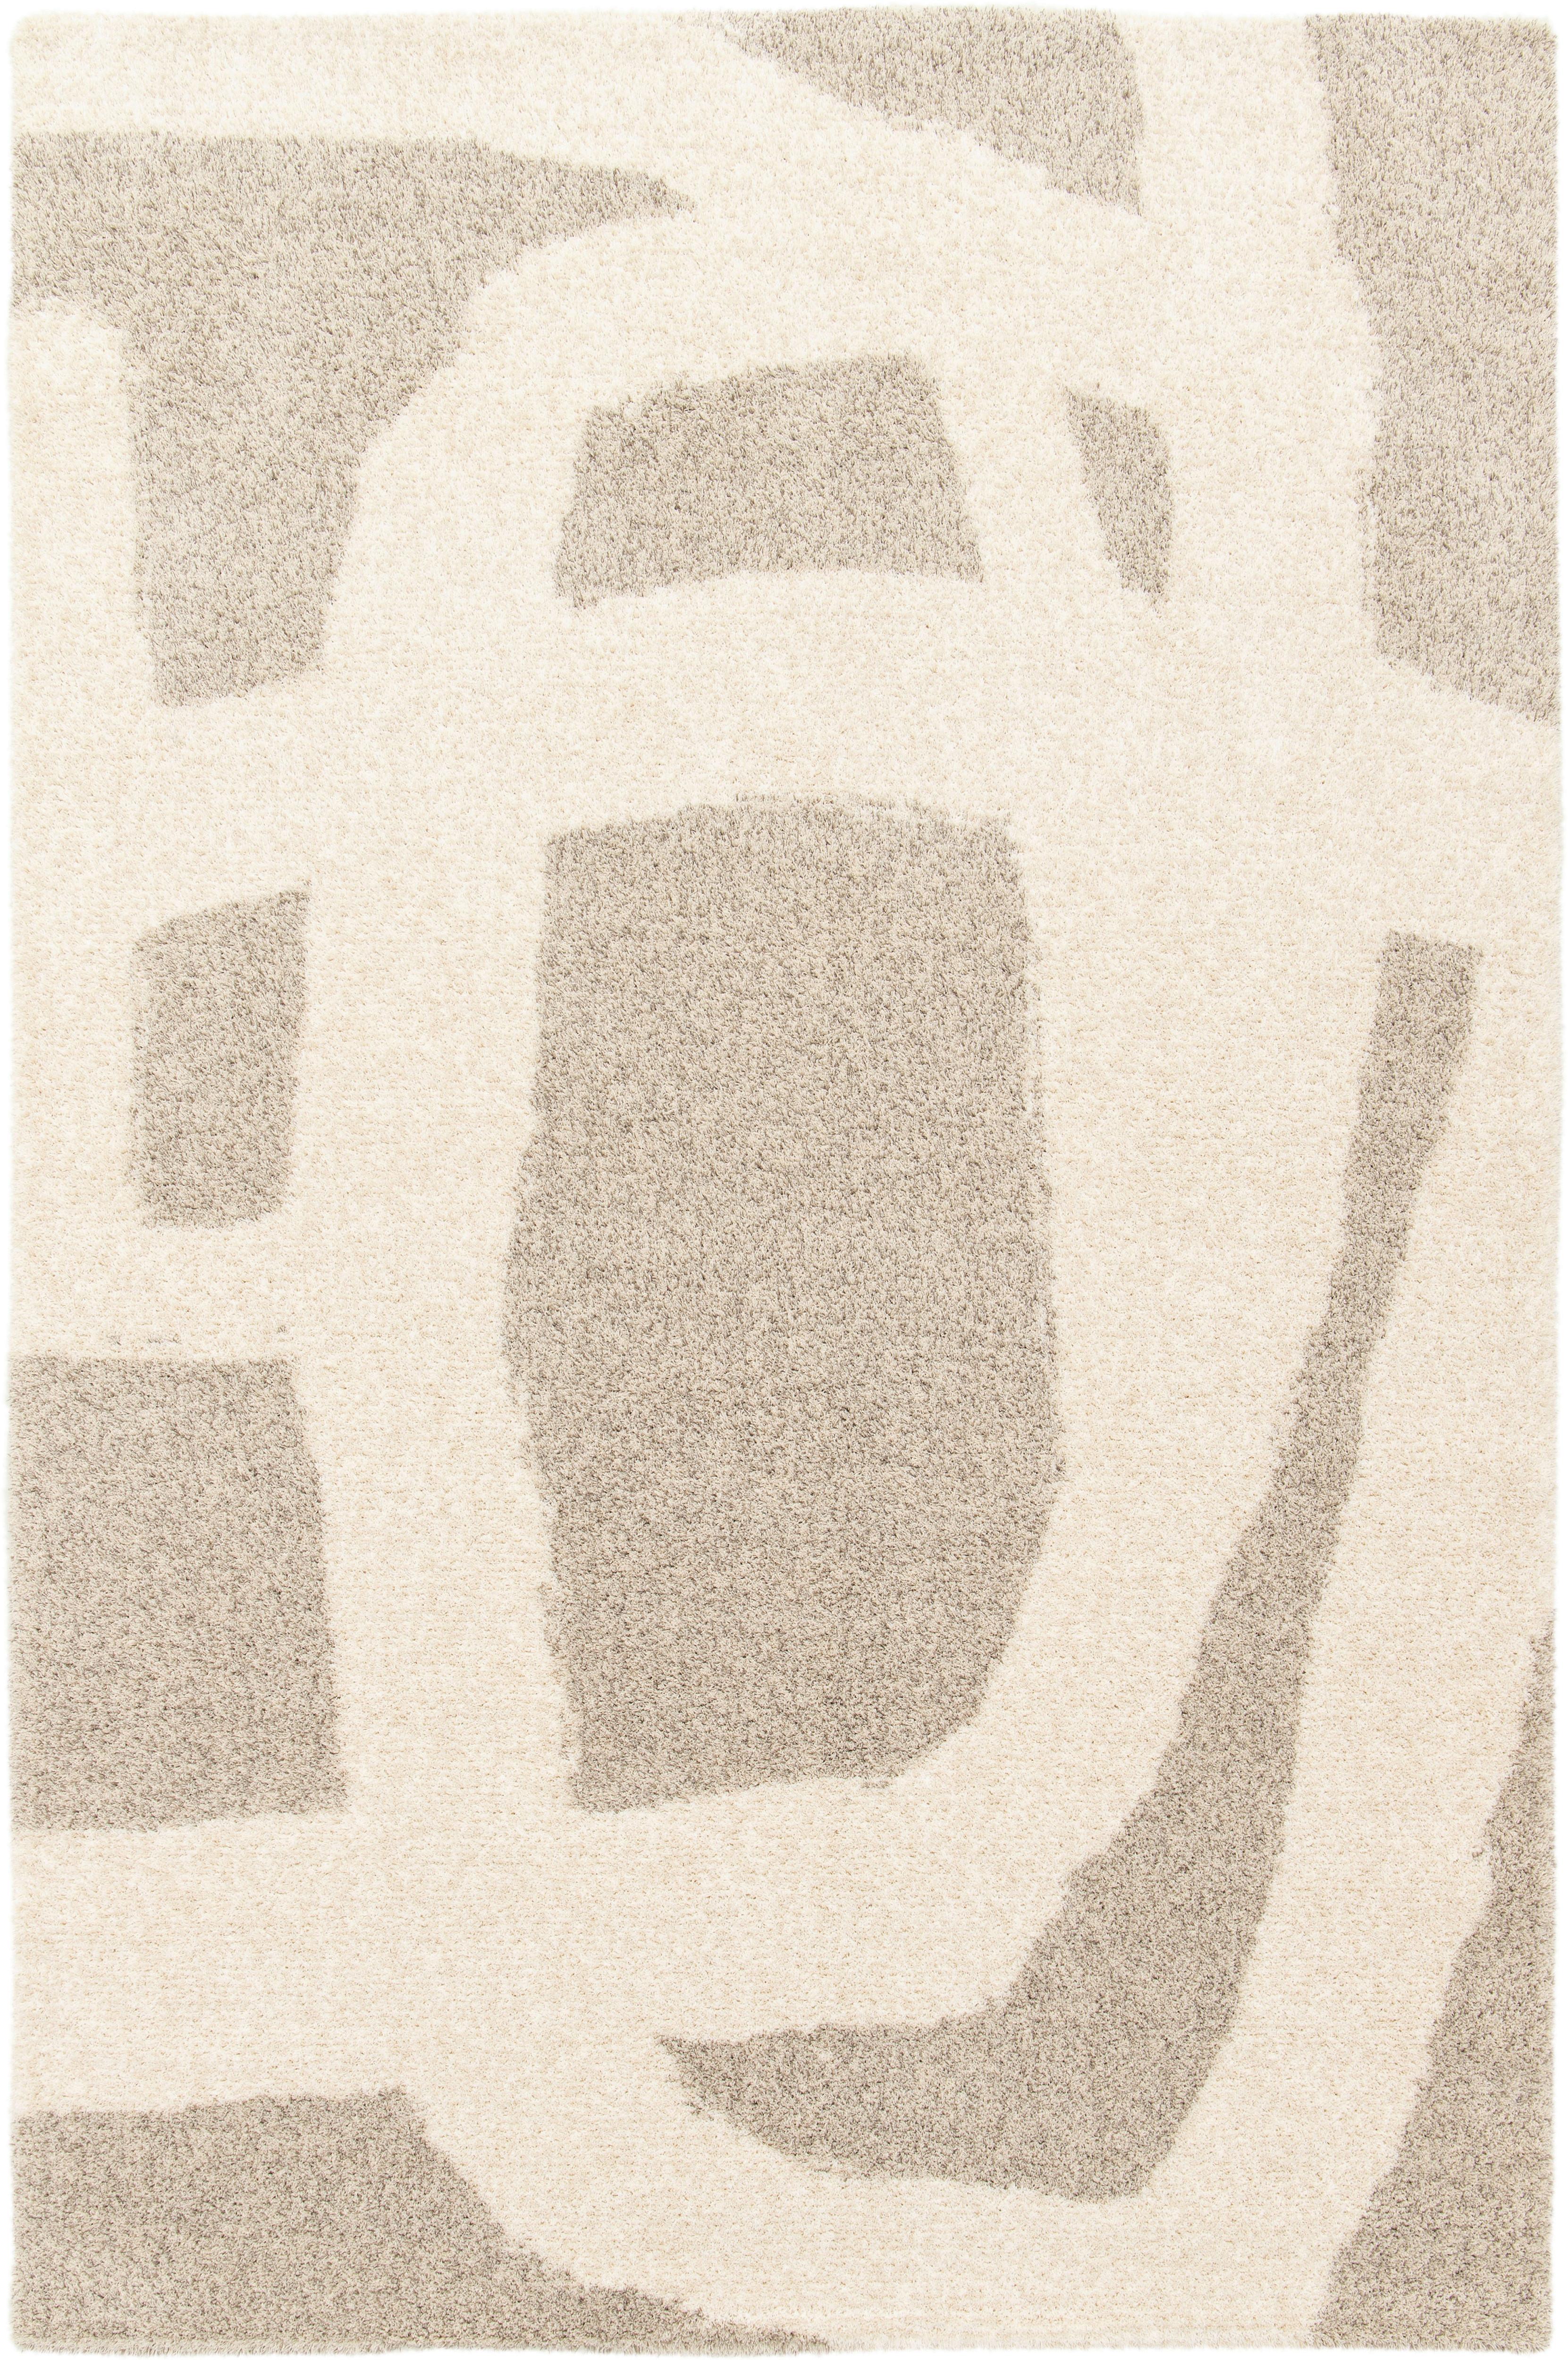 Tkaný Koberec Lilly 1, 80/150cm - krémová/béžová, Moderní, textil (80/150cm) - Modern Living